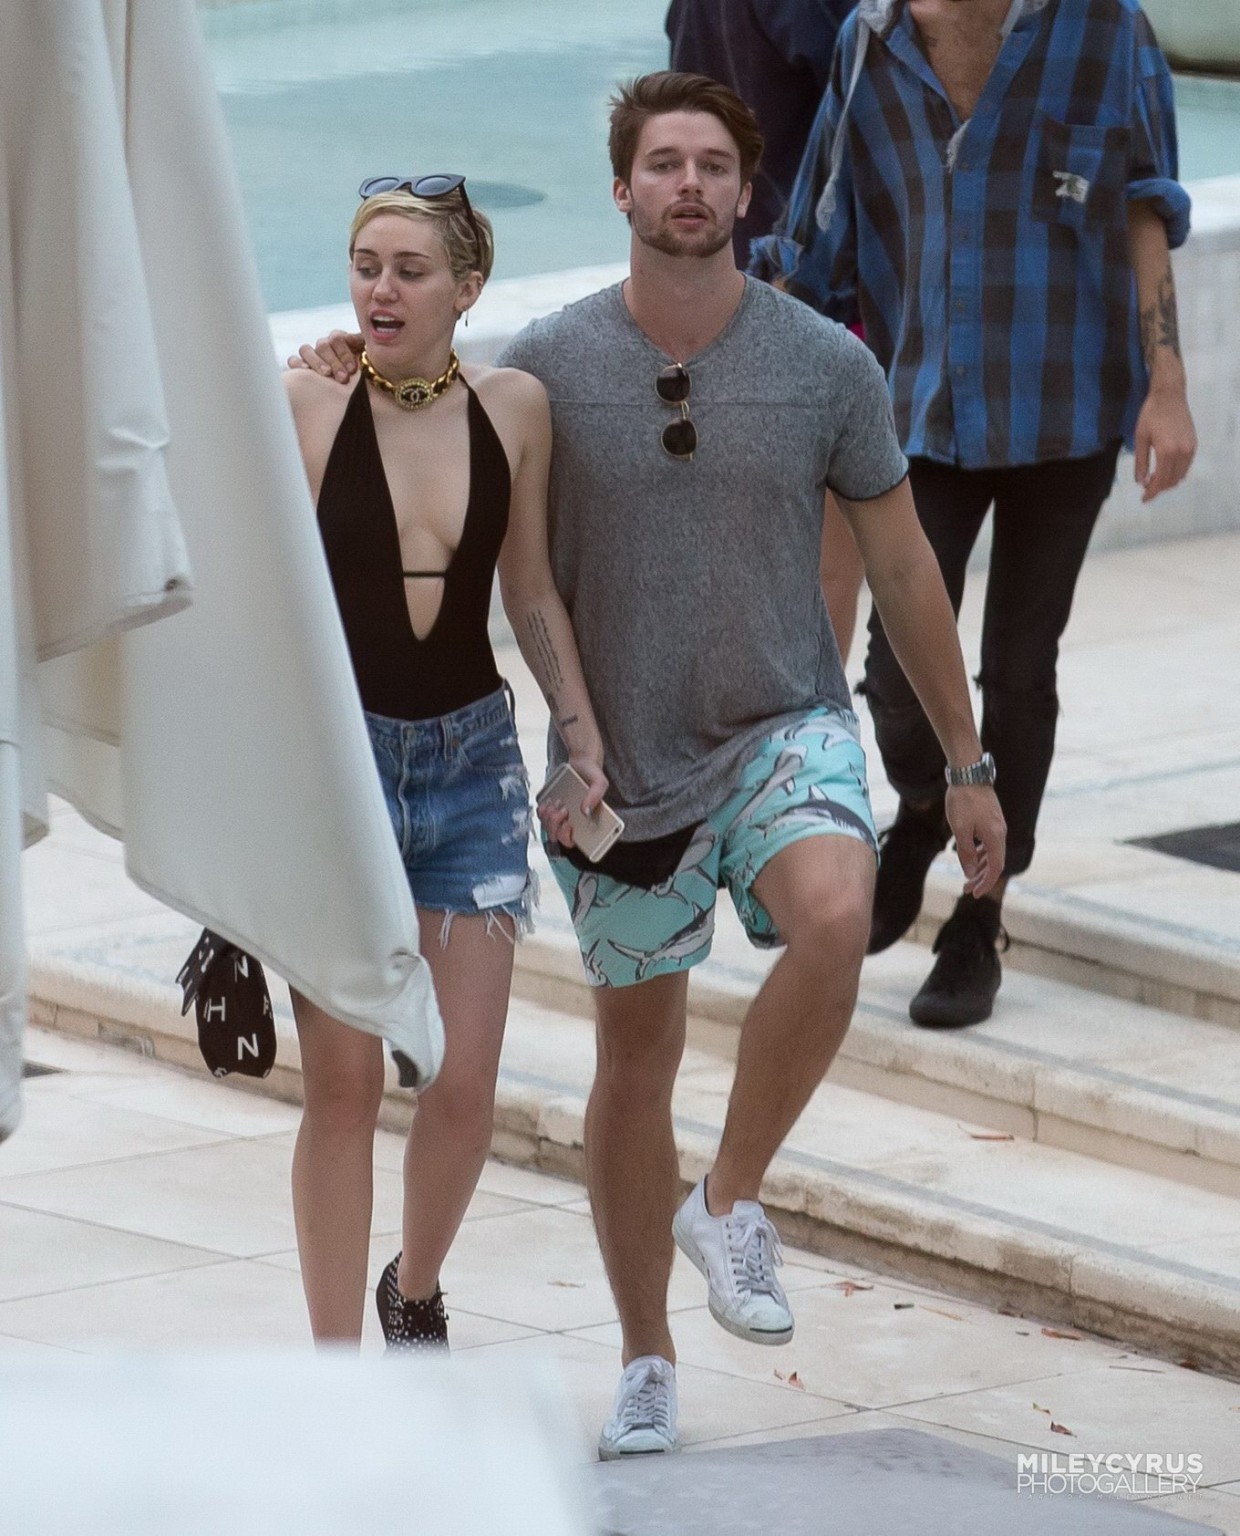 Miley cyrus con traje de baño y hotpants en una piscina en miami
 #75178846